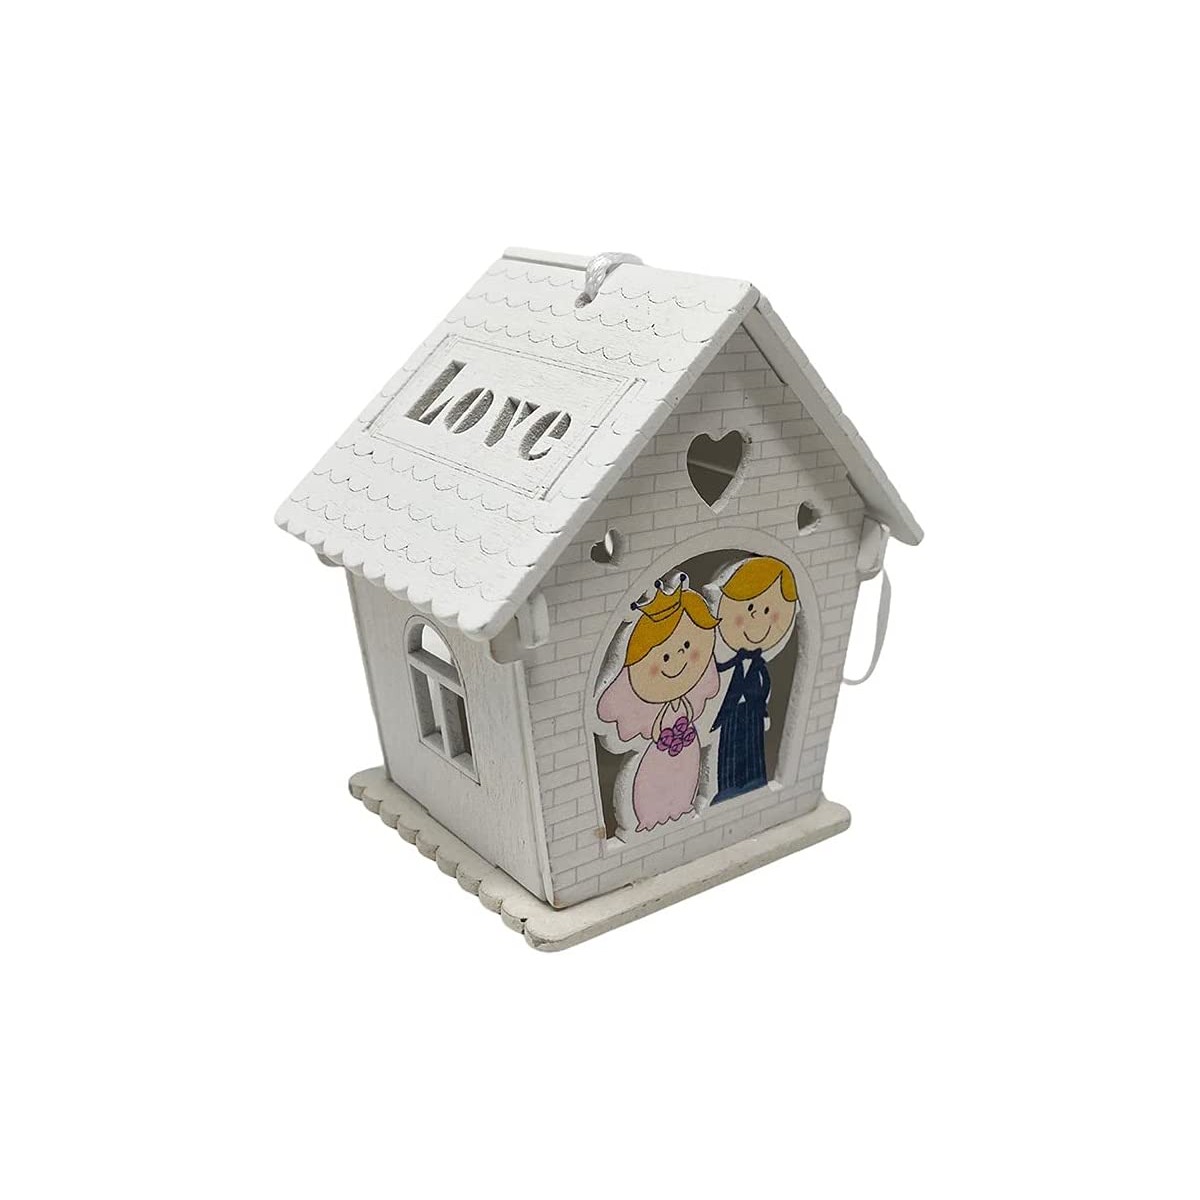 Bomboniera in Legno forma casetta con sposi abbracciati, lanterna